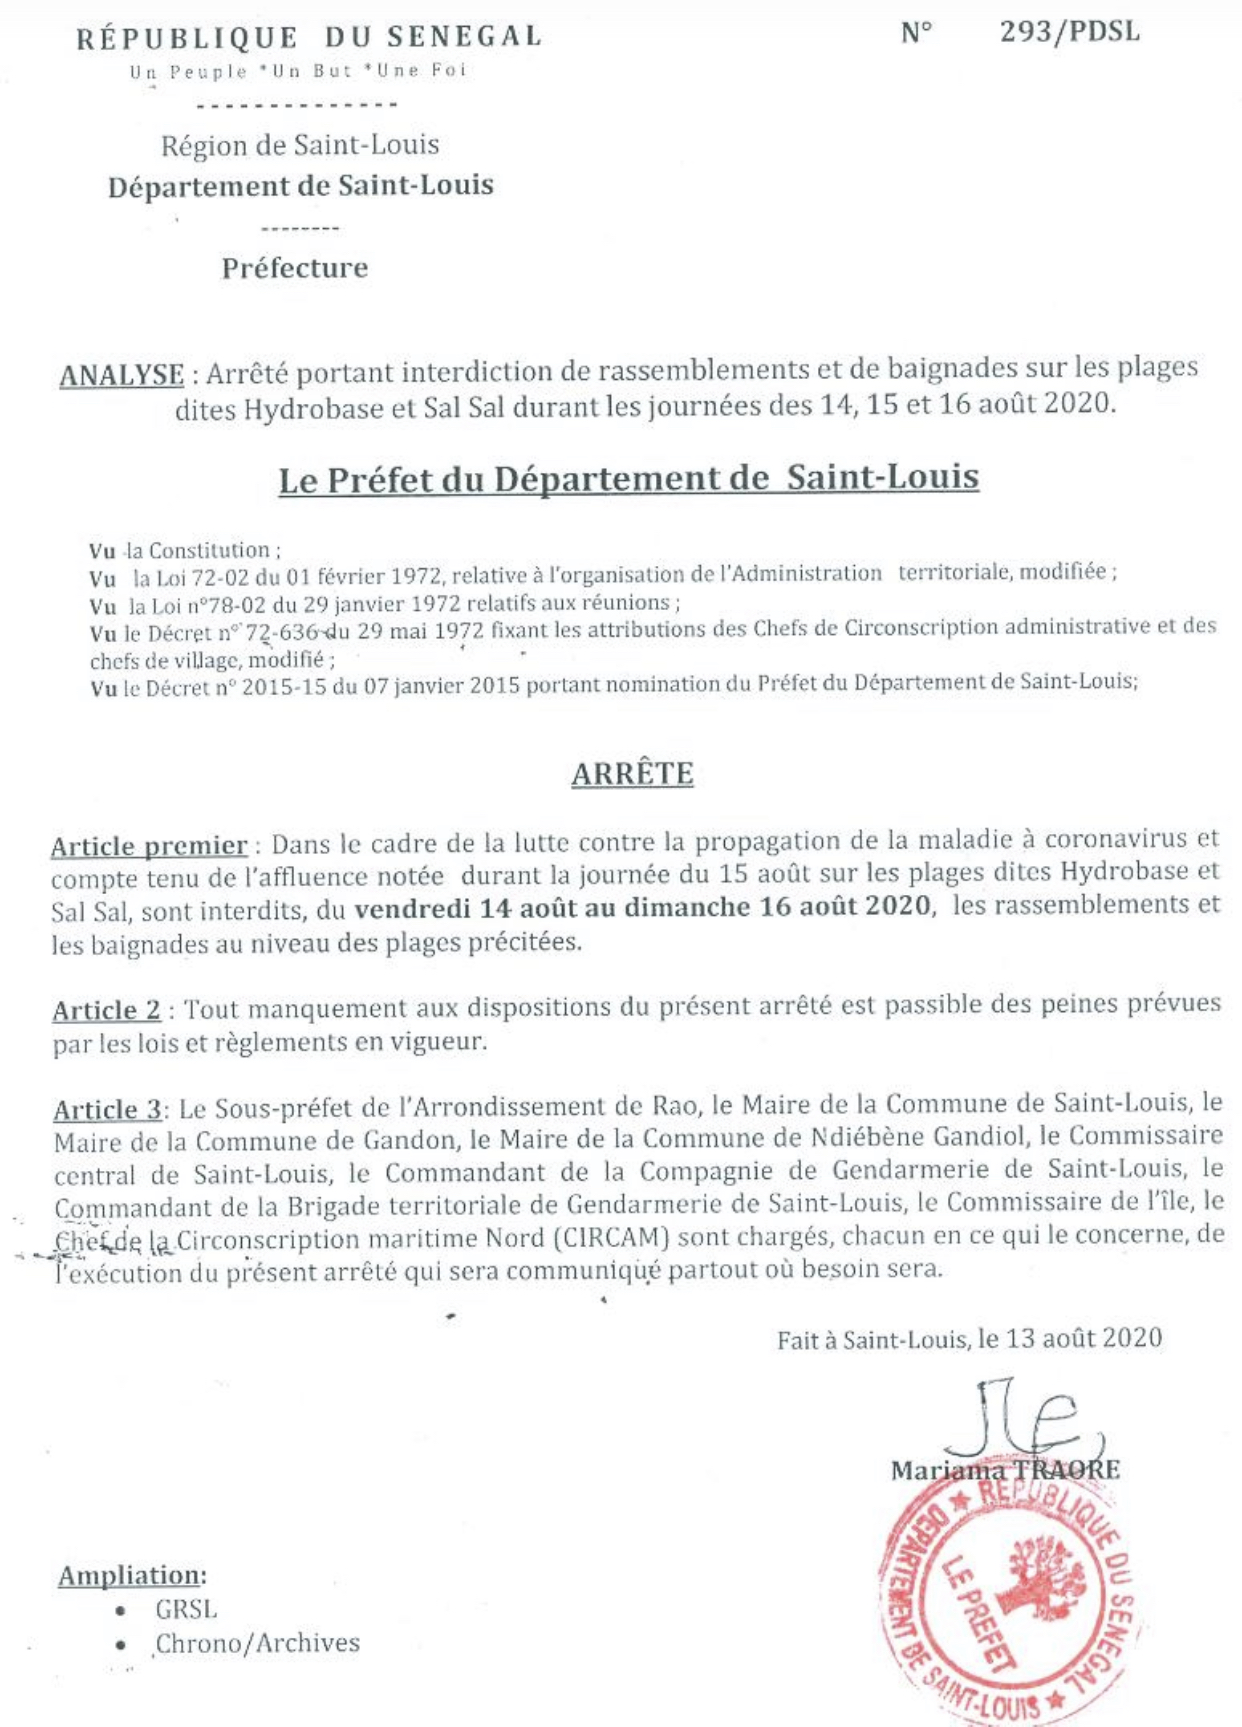 Saint-Louis : Interdiction de rassemblement et de baignade sur les plages Hydrobase et Sal-Sal.